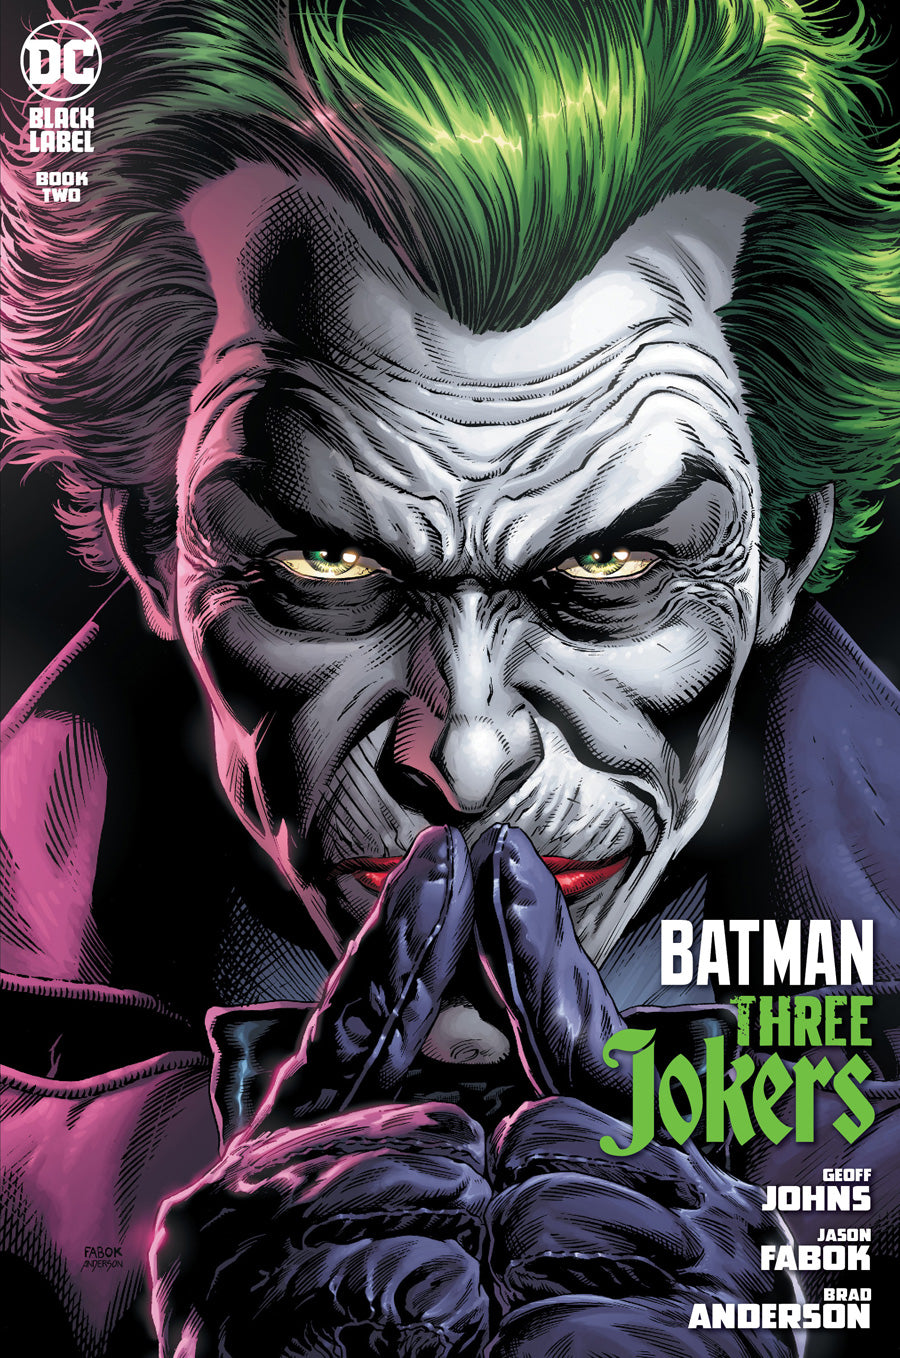 BATMAN THREE JOKERS #2 COVER A JASON FABOK JOKER